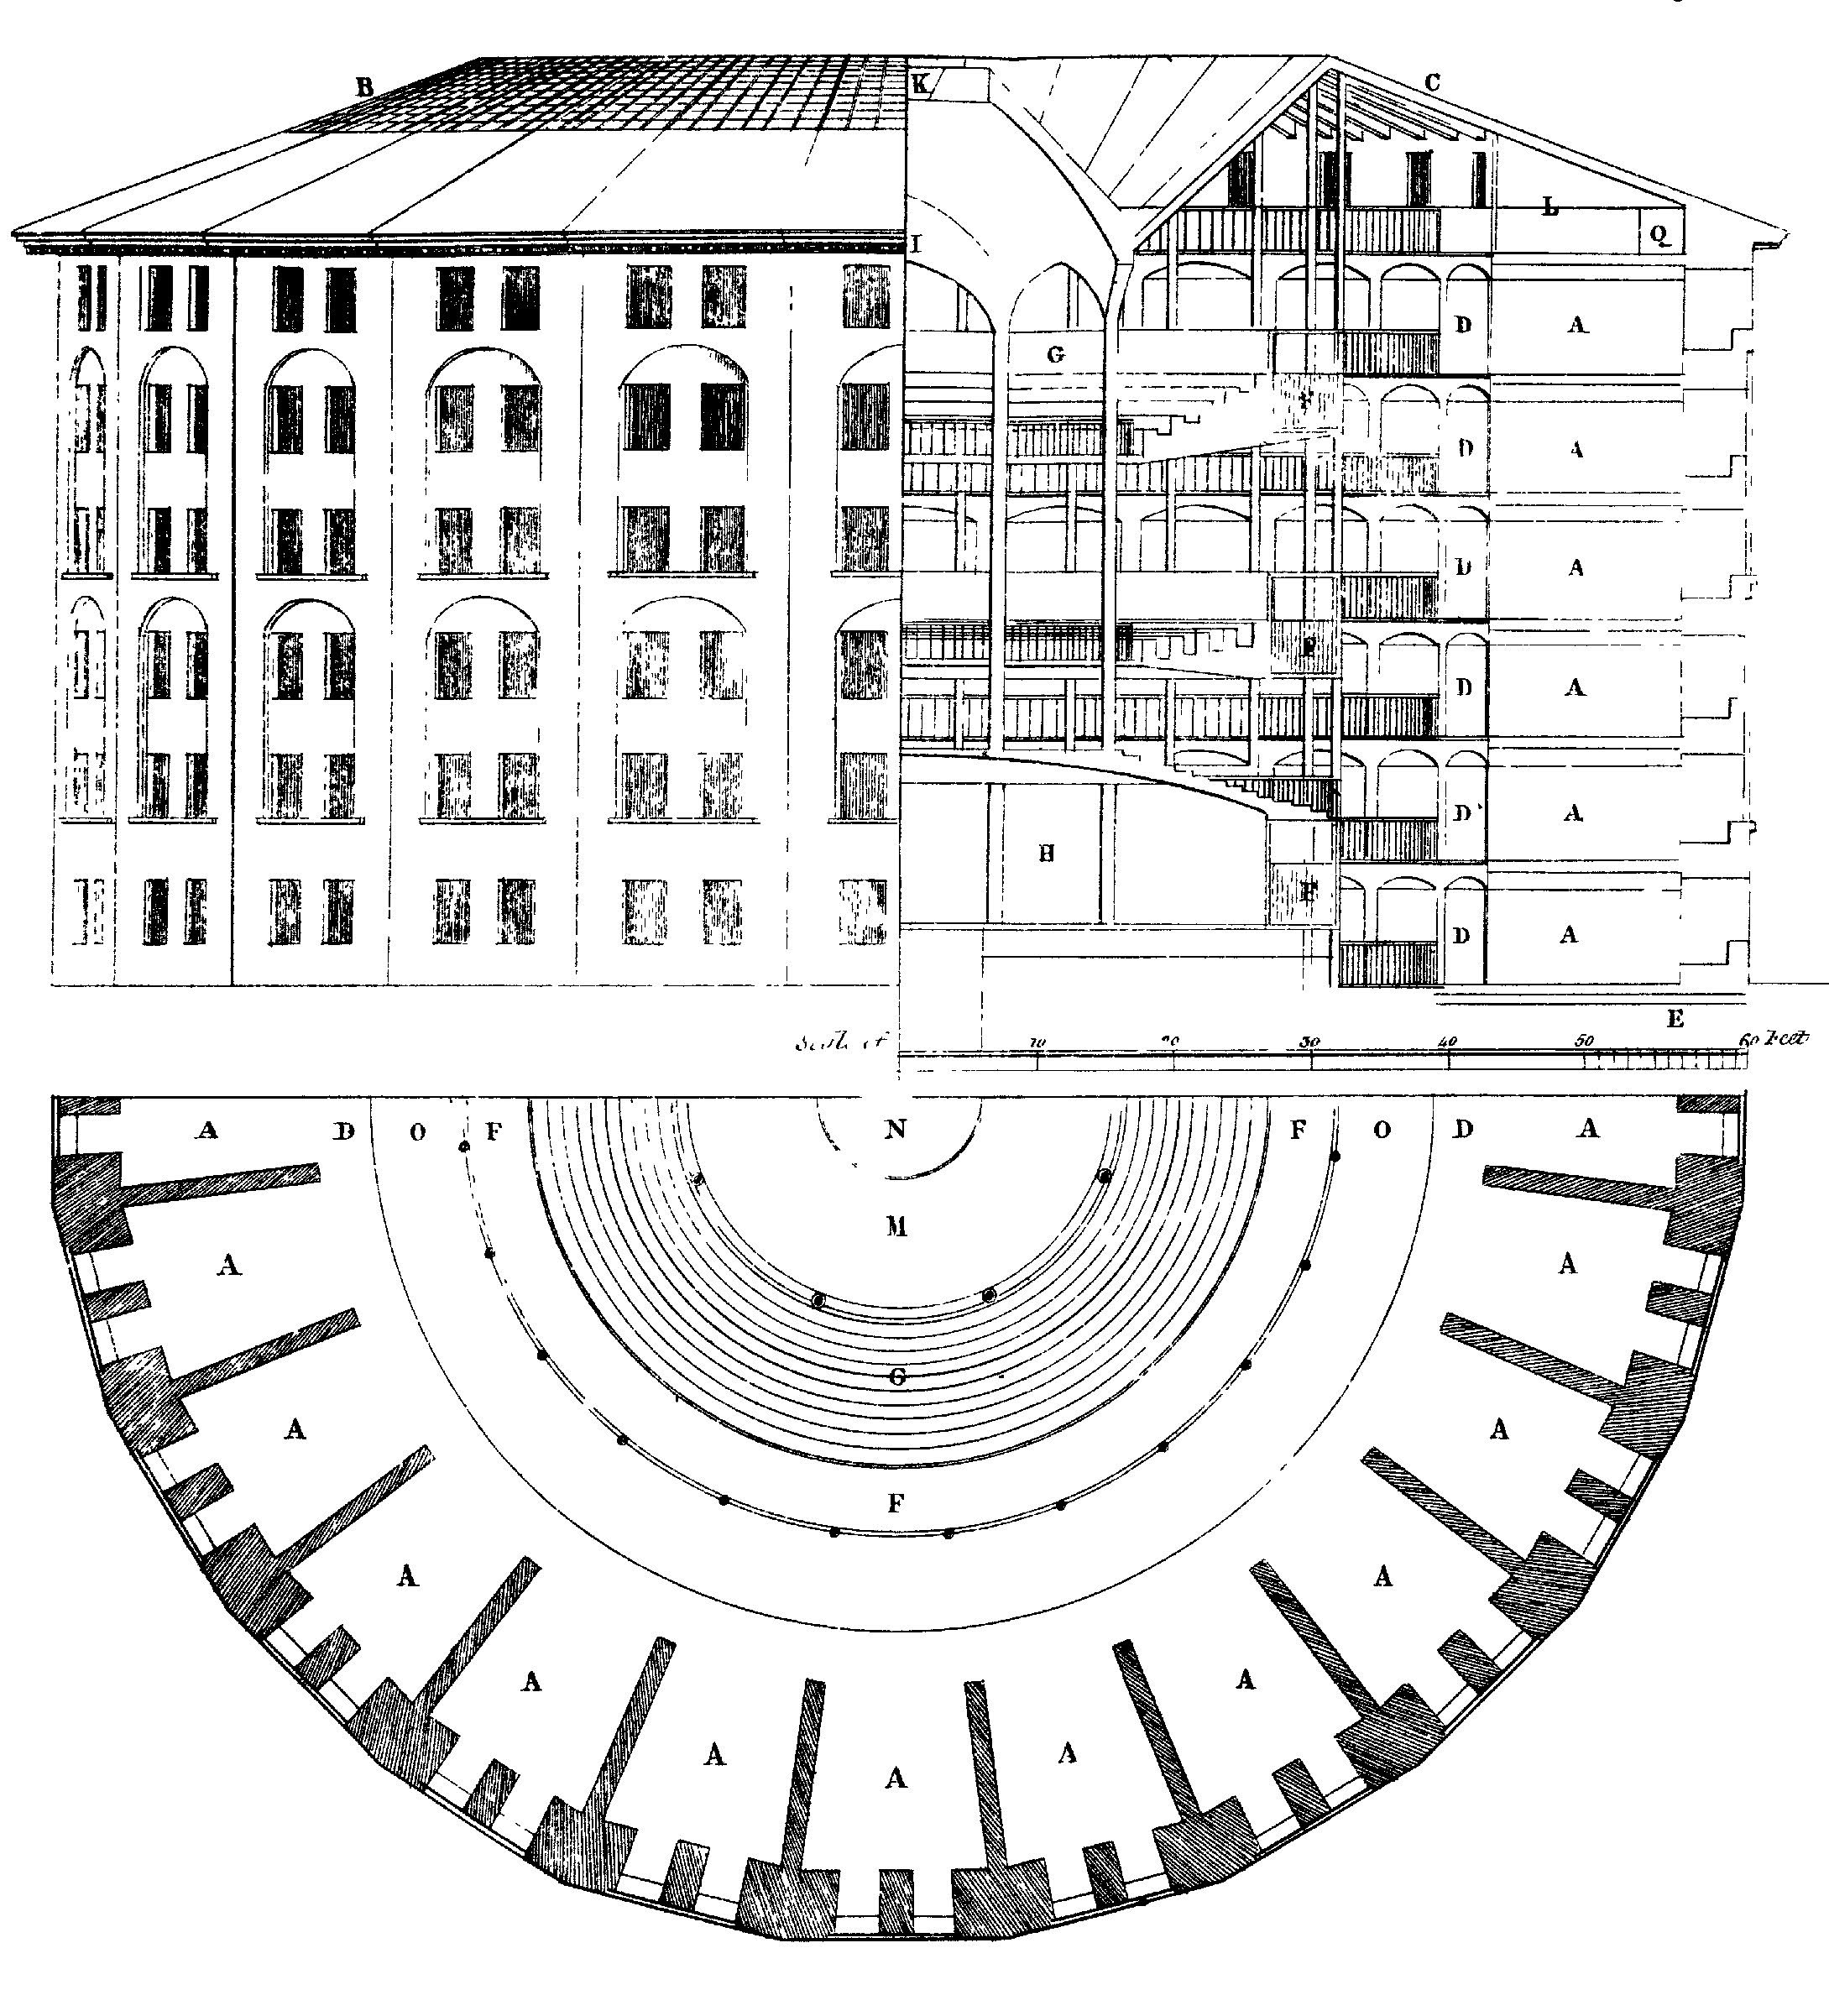 Obrázek 6.3: Návrh věznice Panopticon, nejprve navrhl Jeremy Bentham. Ve středu je neviditelný vidoucí, který může sledovat chování všech, ale nemůže být pozorován. Kresba Willey Reveley, 1791 (Zdroj: Wikimedia Commons).